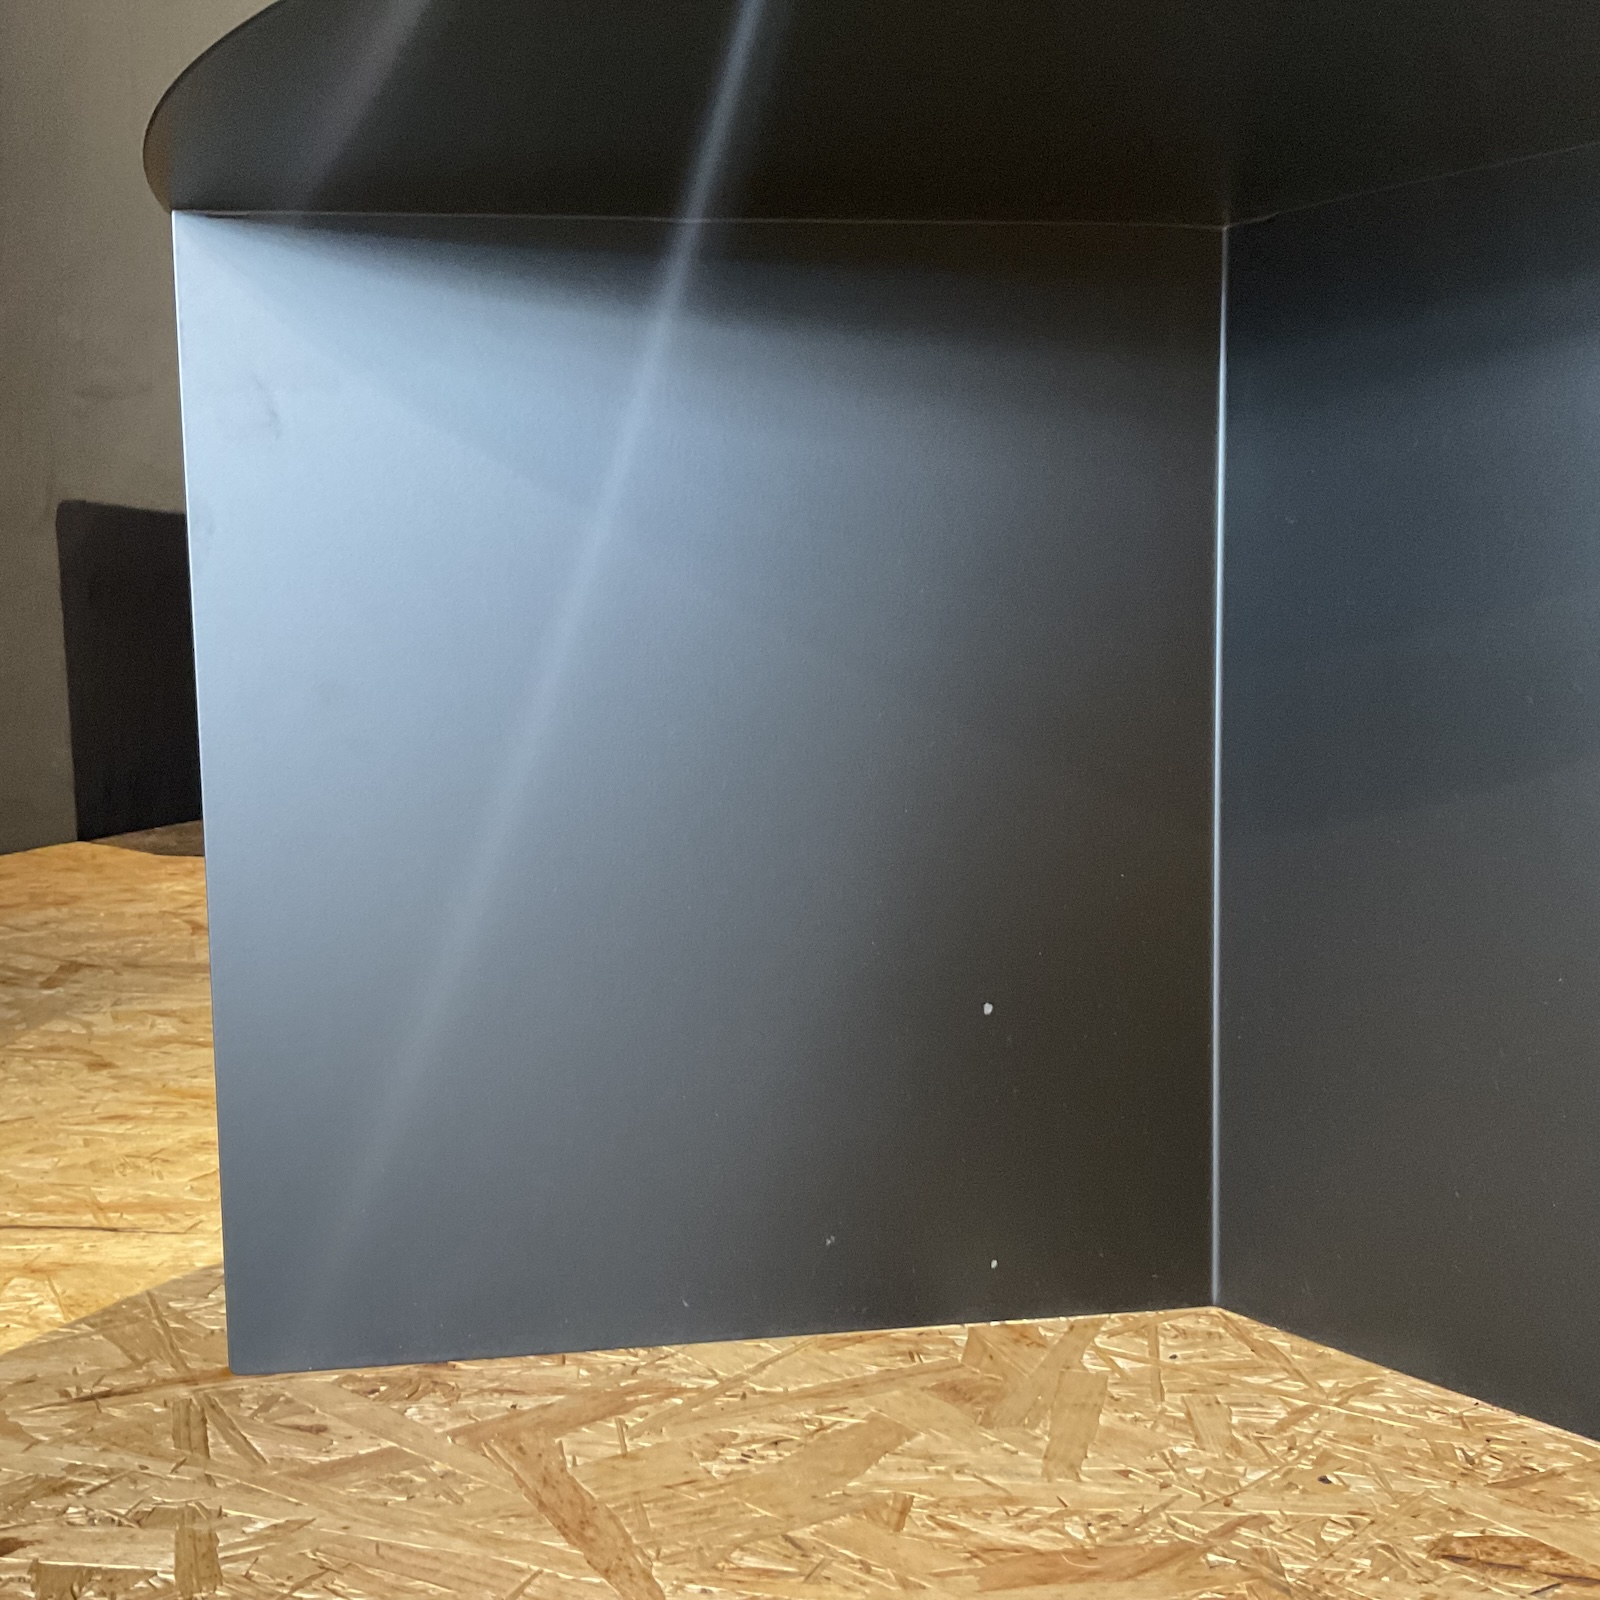 Beistelltisch Slit XL Table Black mit Durchmesser 65 cm